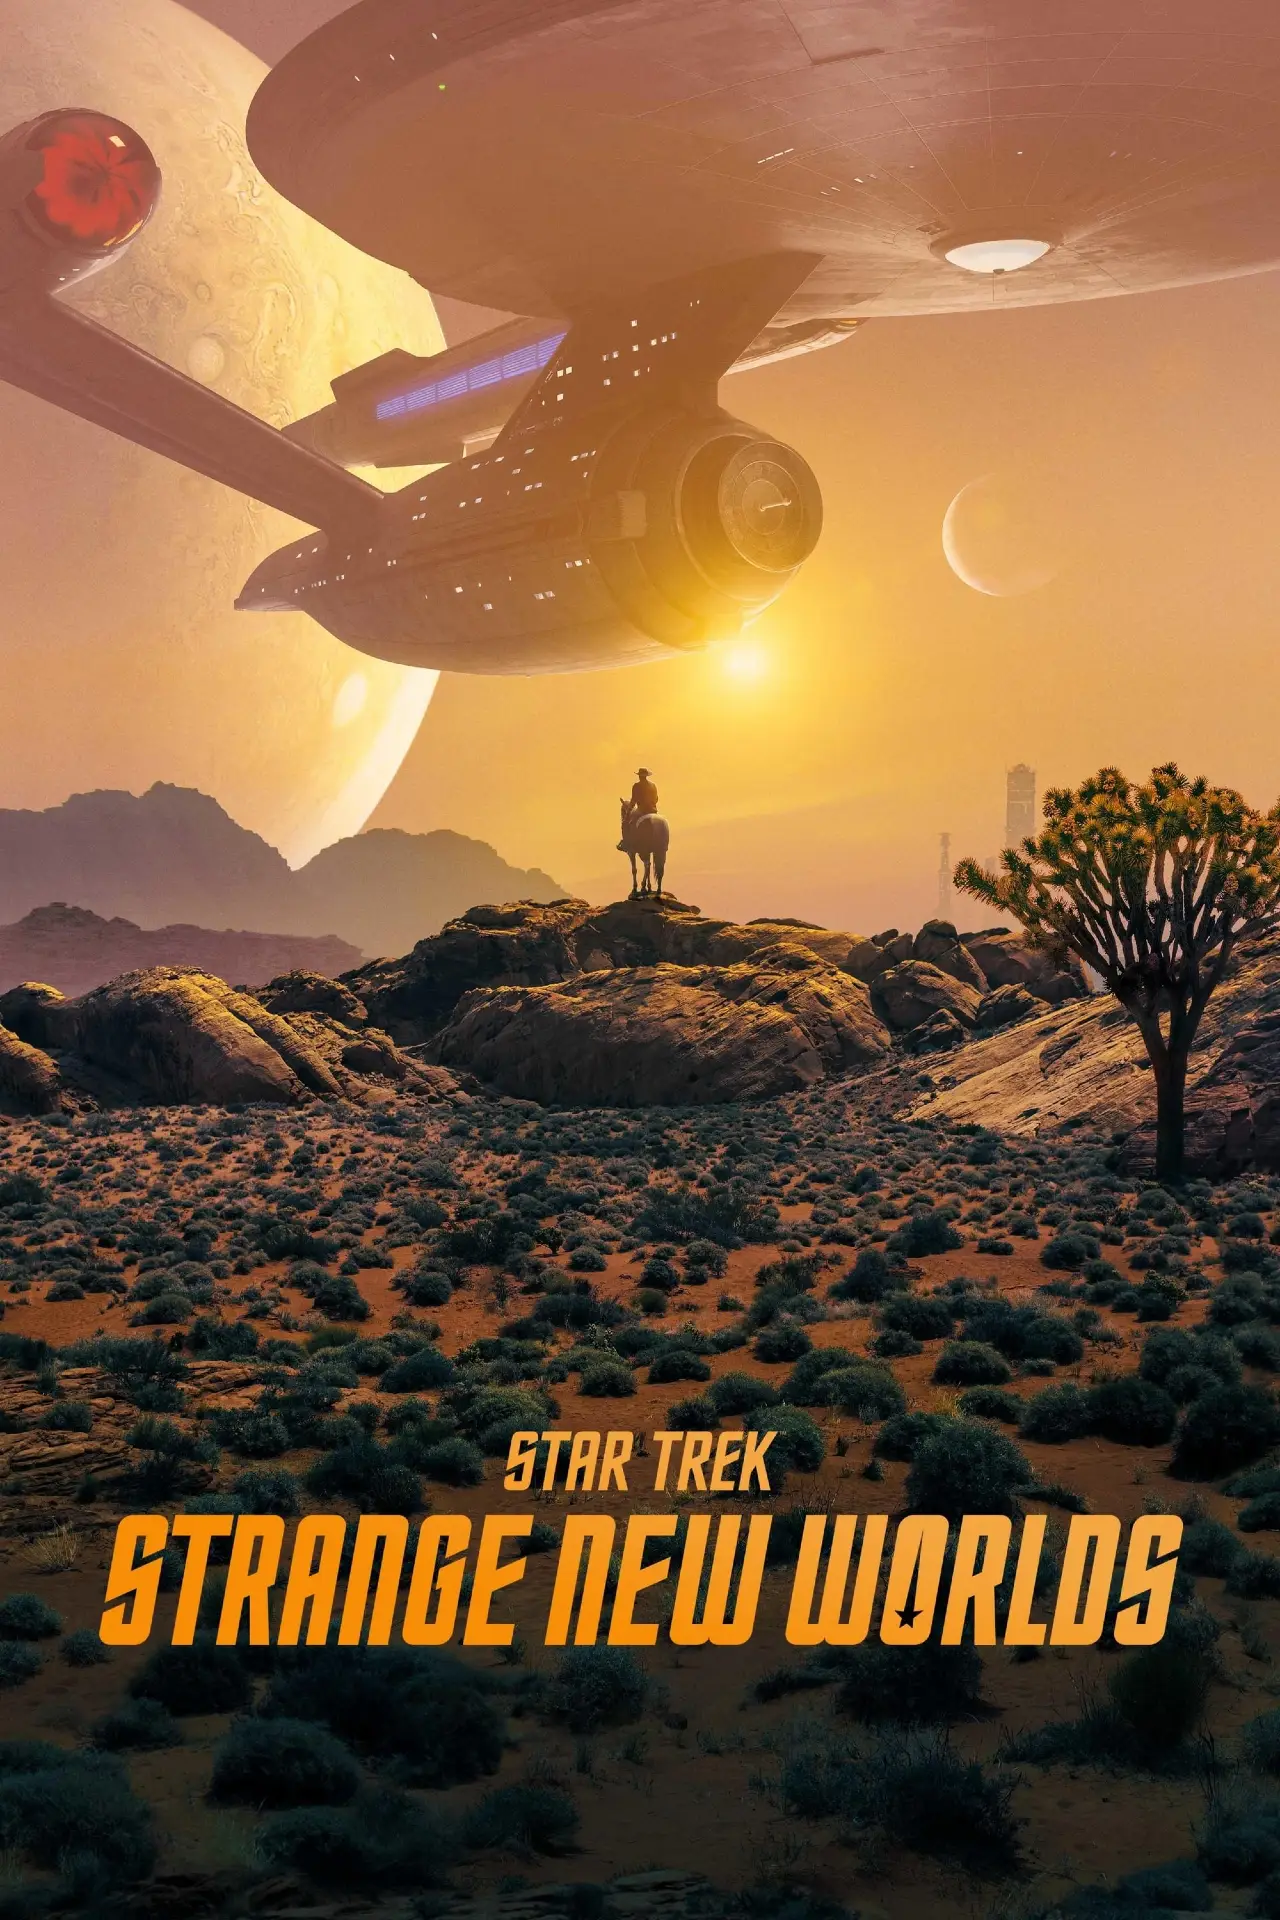 Star Trek: Strange New Worlds yabancı dizi izle diziall